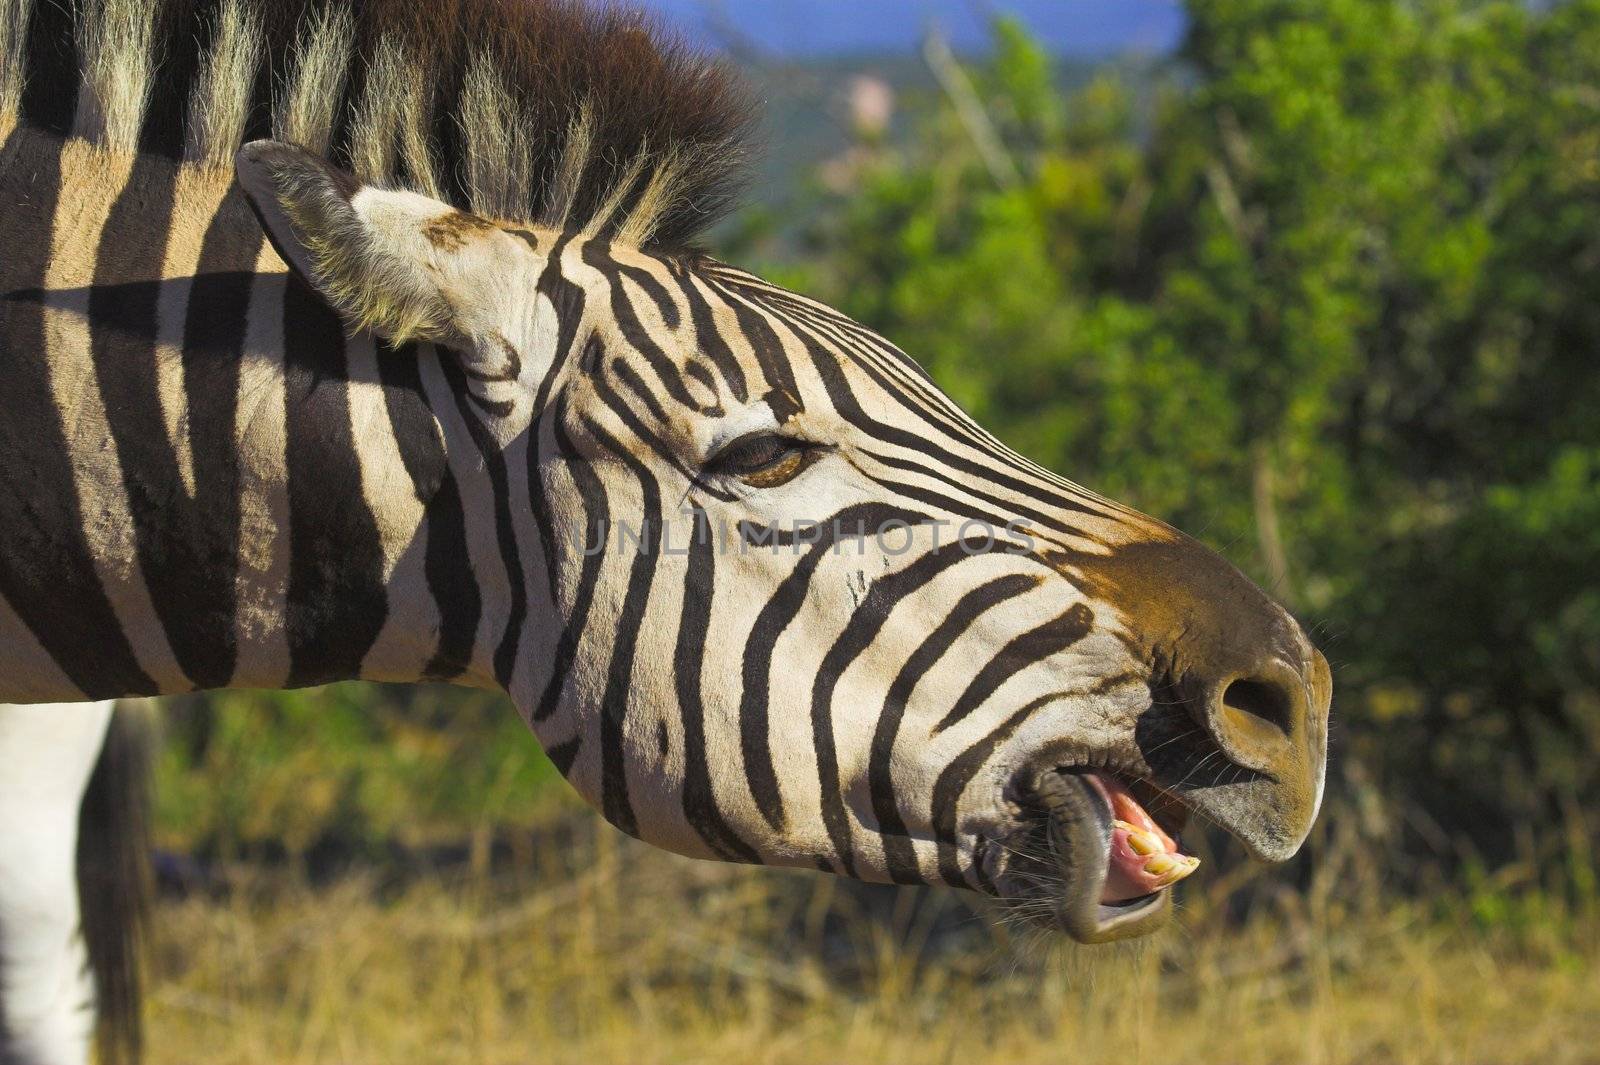 Zebra Teeth by nightowlza